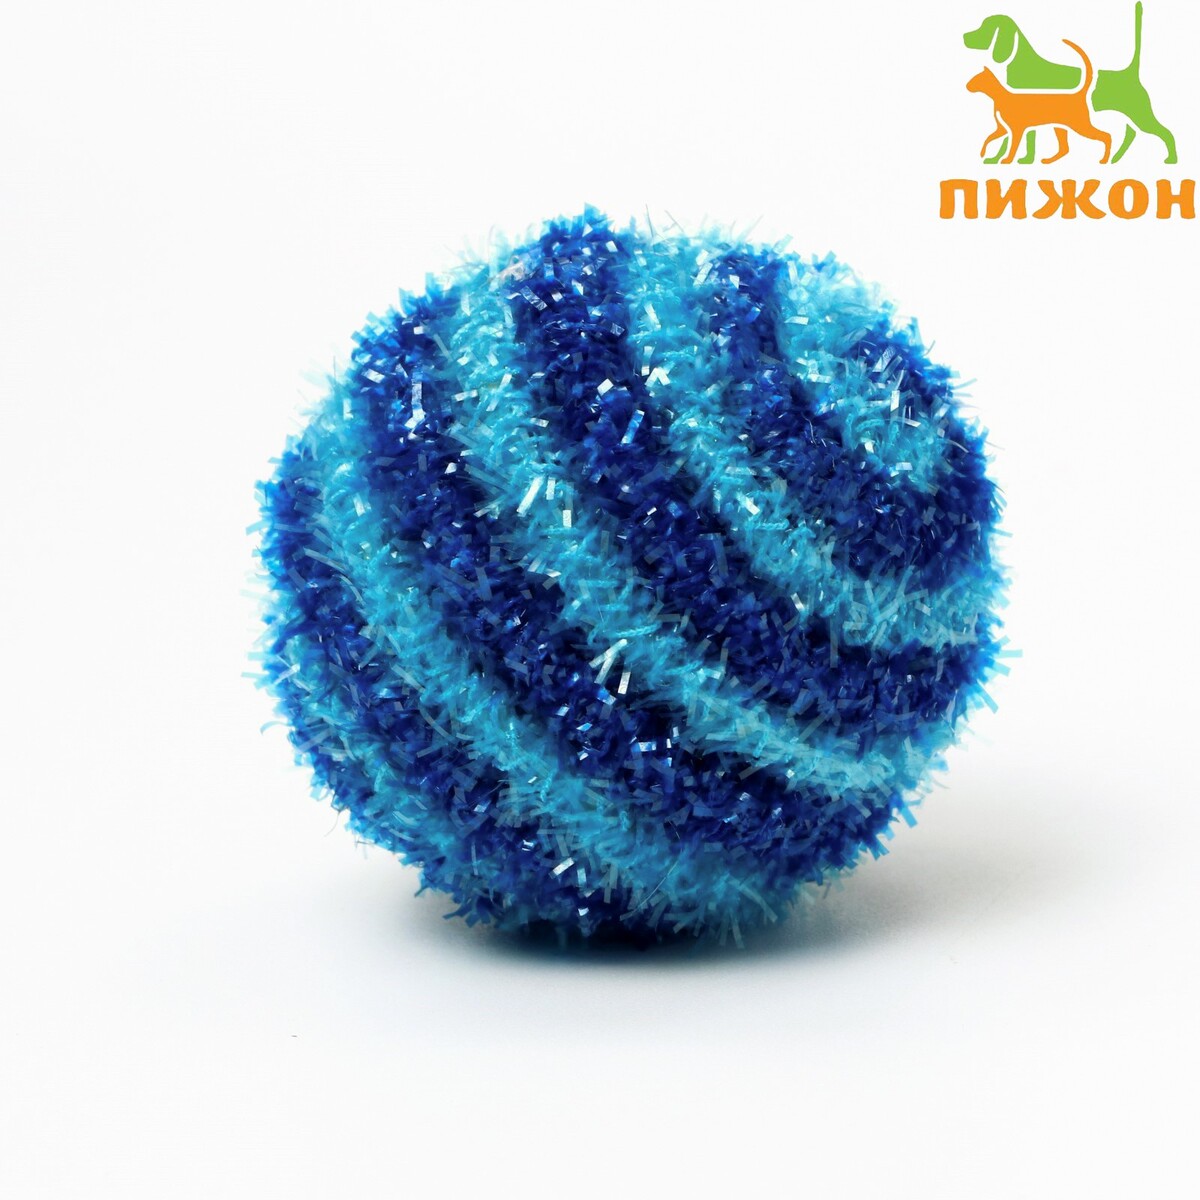 Шар-погремушка блестящий двухцветный, 5 см, синий/голубой шар погремушка блестящий двух ный 5 см синий голубой